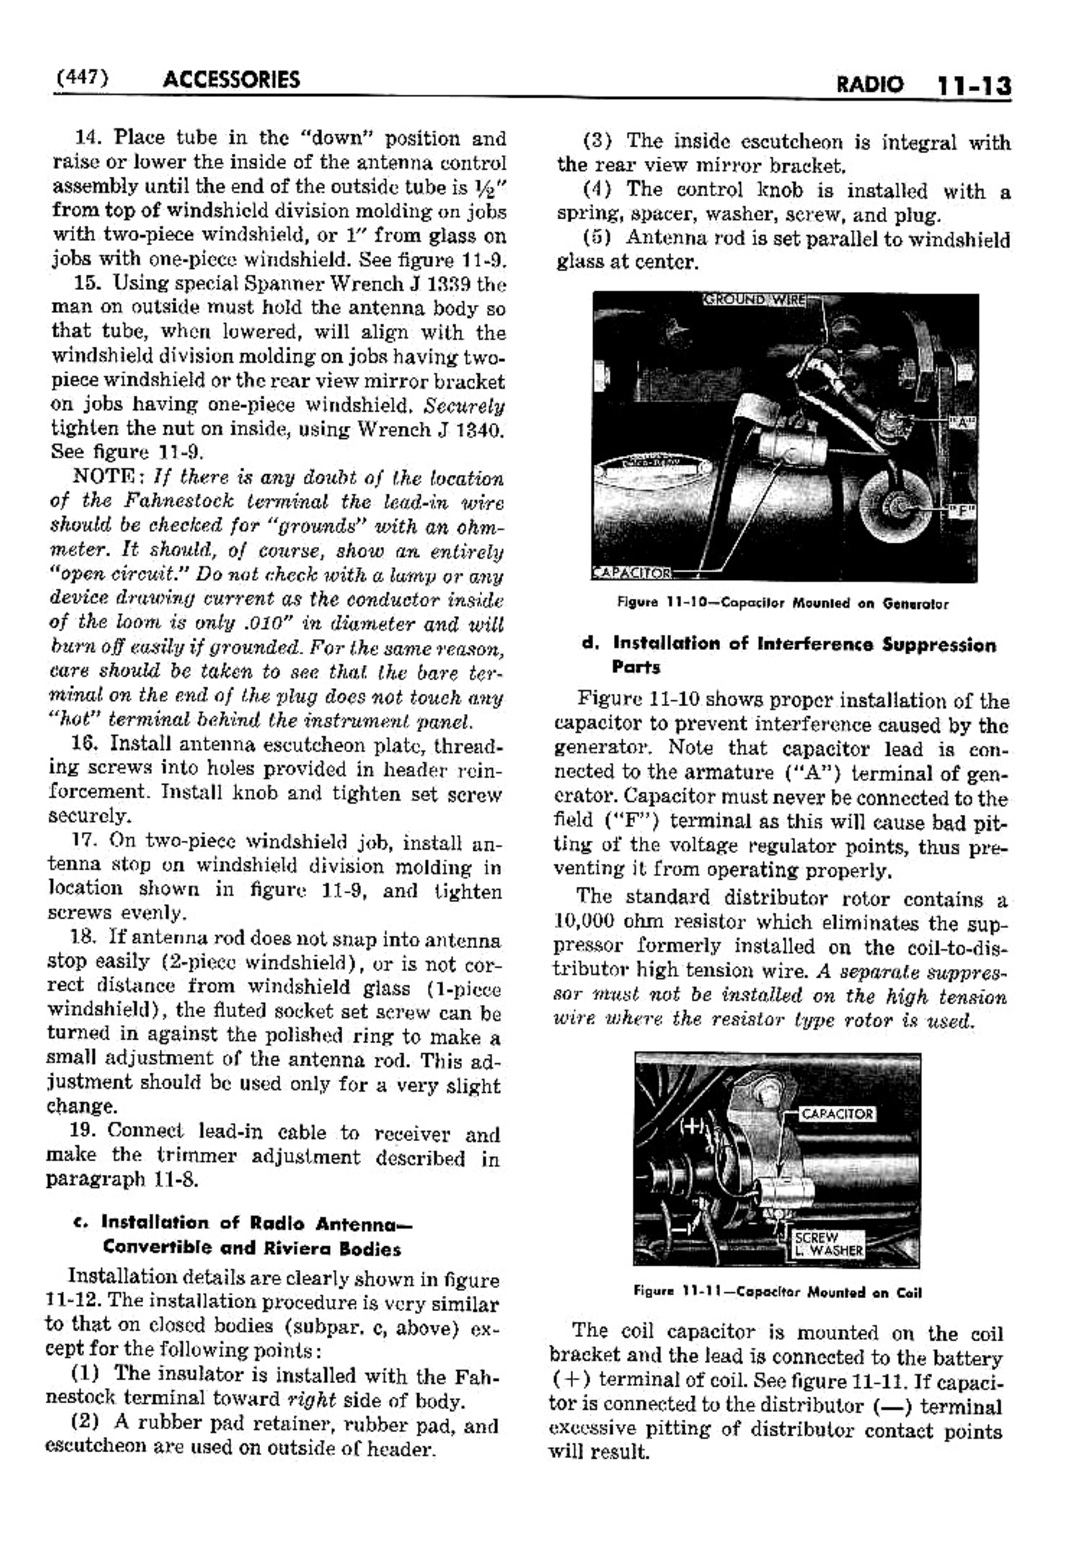 n_12 1952 Buick Shop Manual - Accessories-013-013.jpg